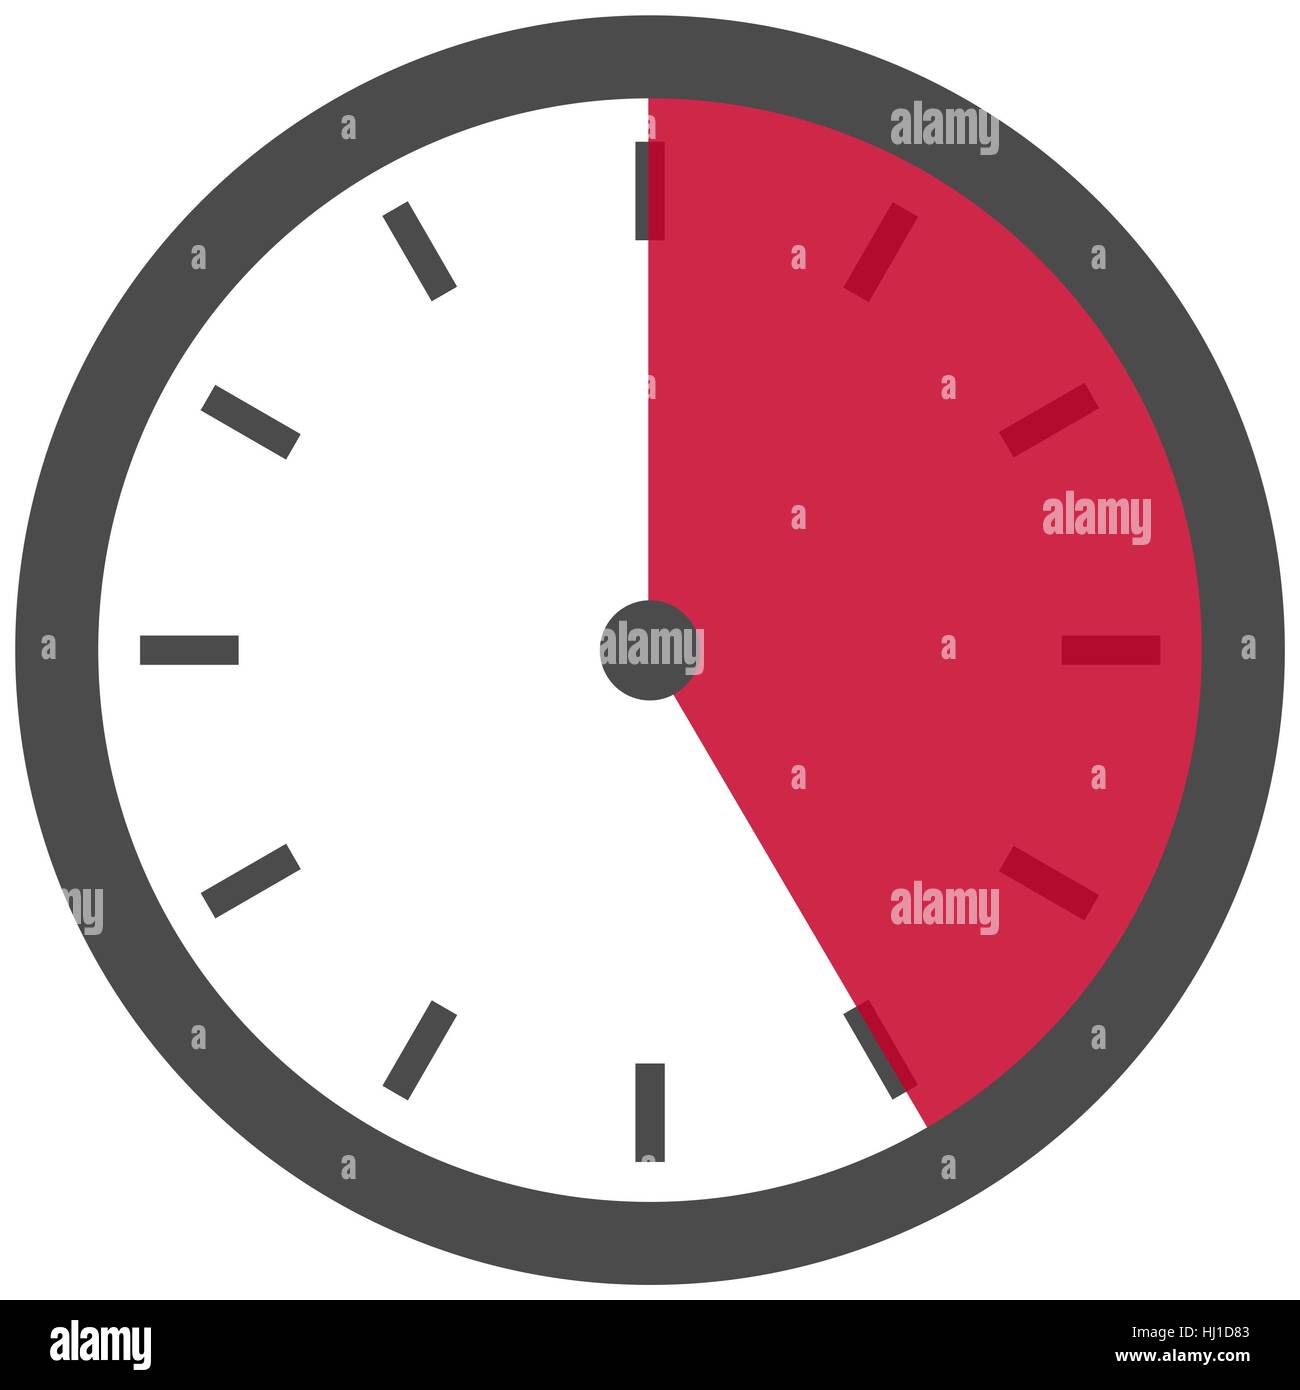 Uhr - Dauer: 25 Sekunden 25 Minuten oder 5 Stunden Stockfotografie - Alamy